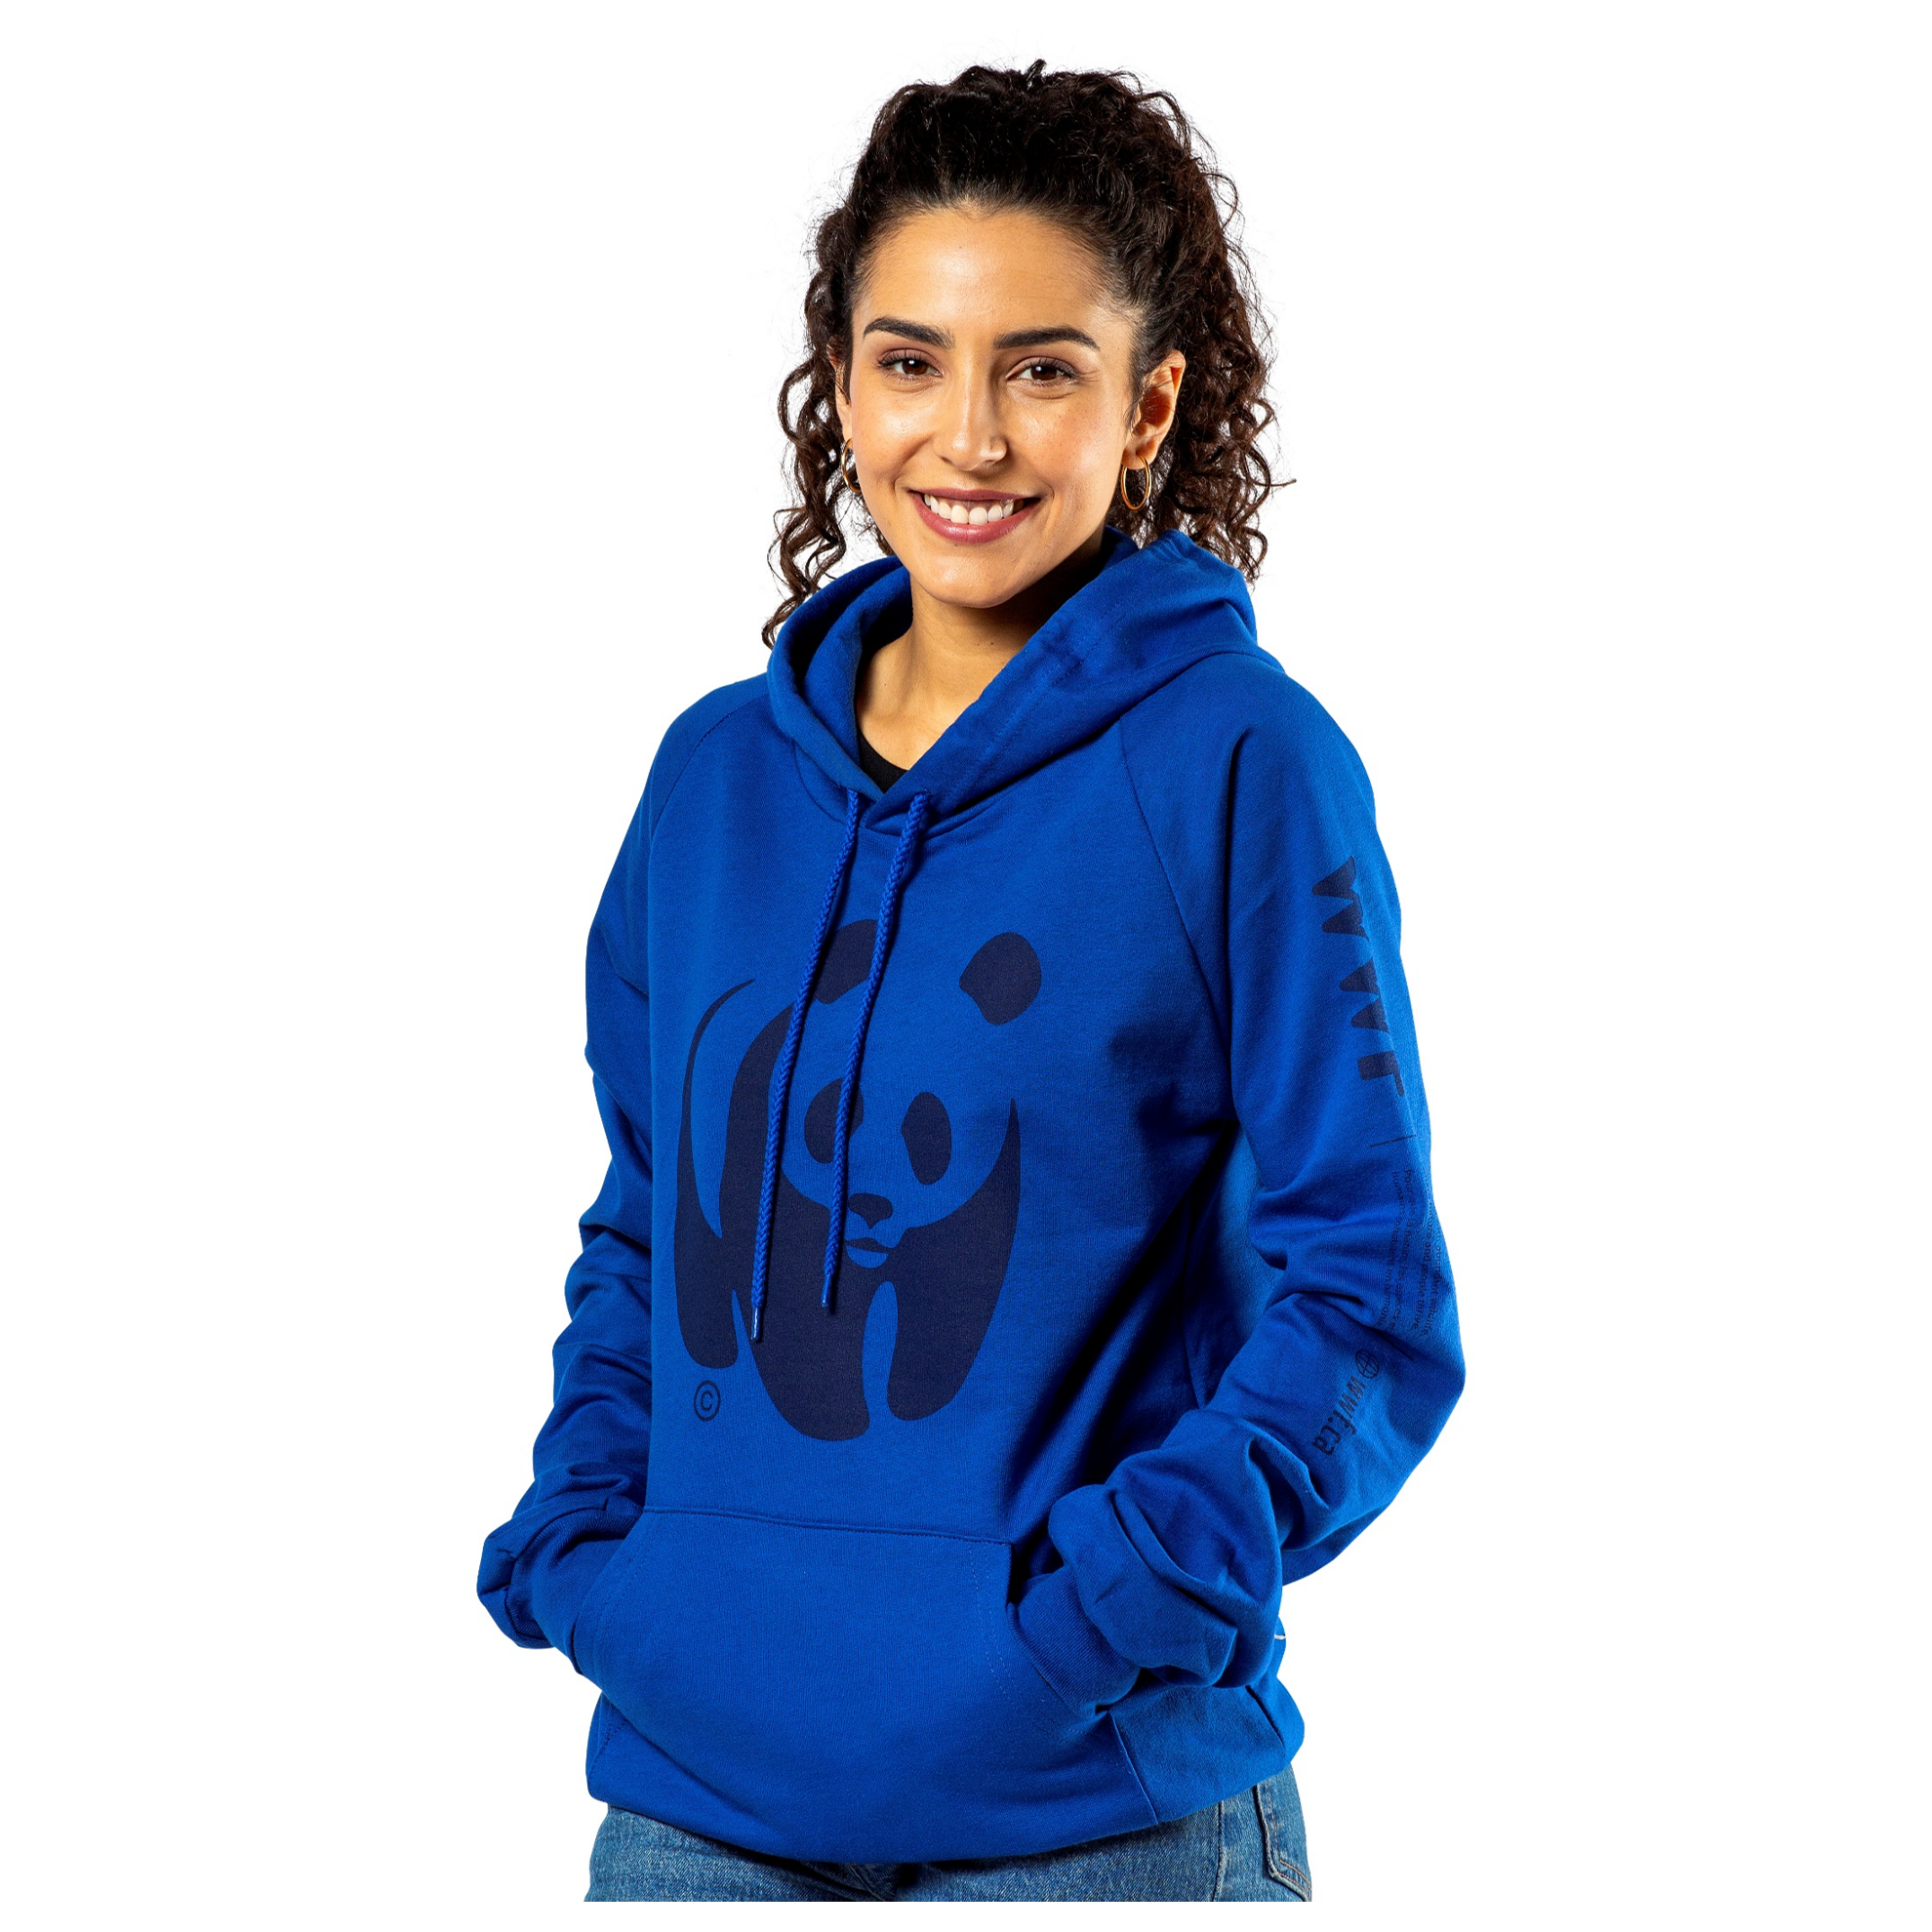 Unisex blue hooded sweatshirt